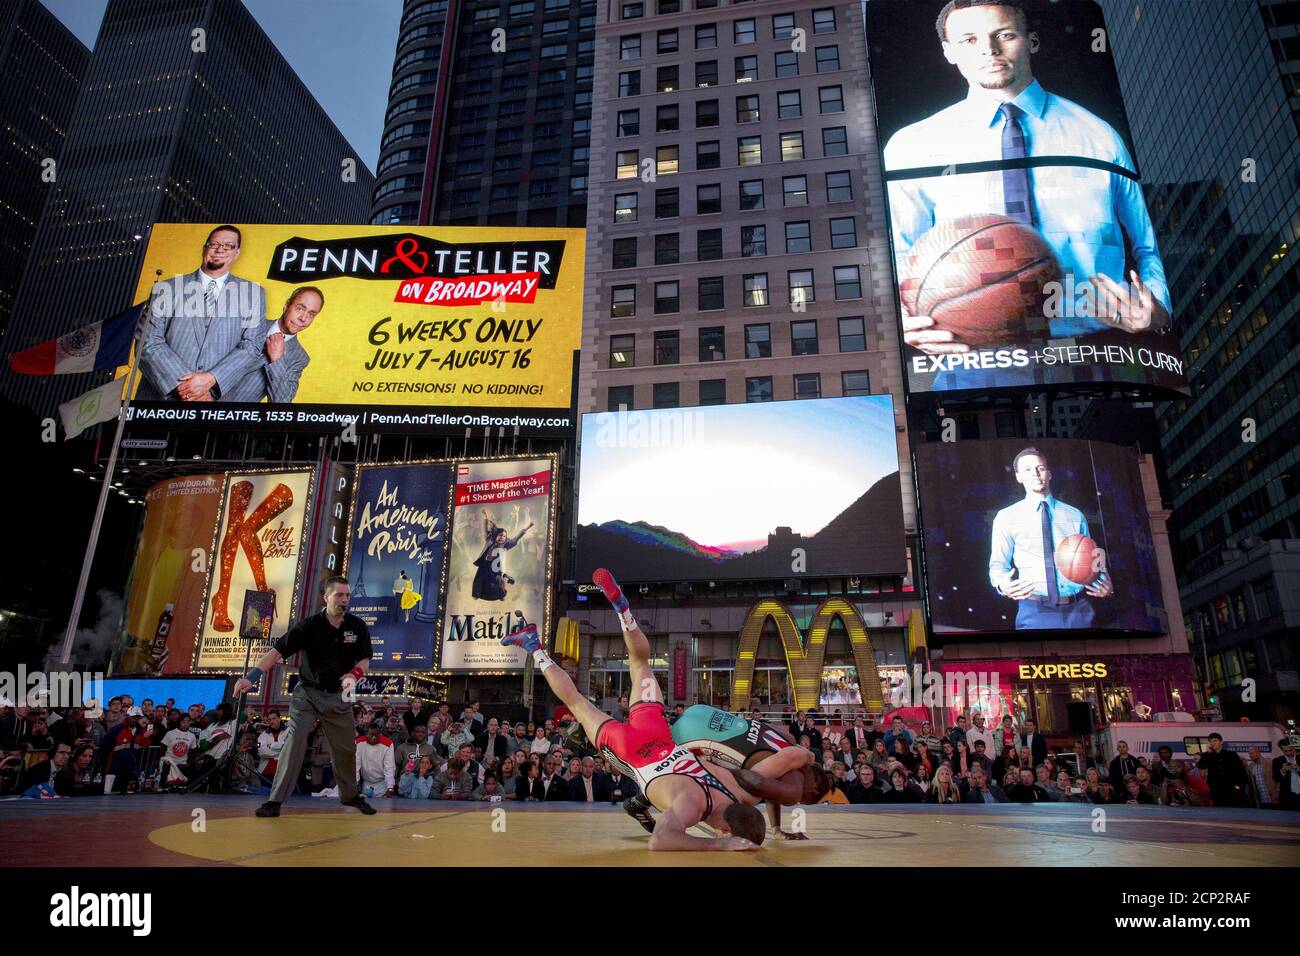 Der amerikanische Wrestler David Taylor konkurriert mit Livan Lopez Azcuy aus Kuba während ihres "Salsa in the Square" Wrestling Matches am New Yorker Times Square, 21. Mai 2015. Die Vereinigten Staaten haben Kuba in einer Ausstellung auf dem Times Square in New York City erkrankt. REUTERS/Brendan McDermid Stockfoto